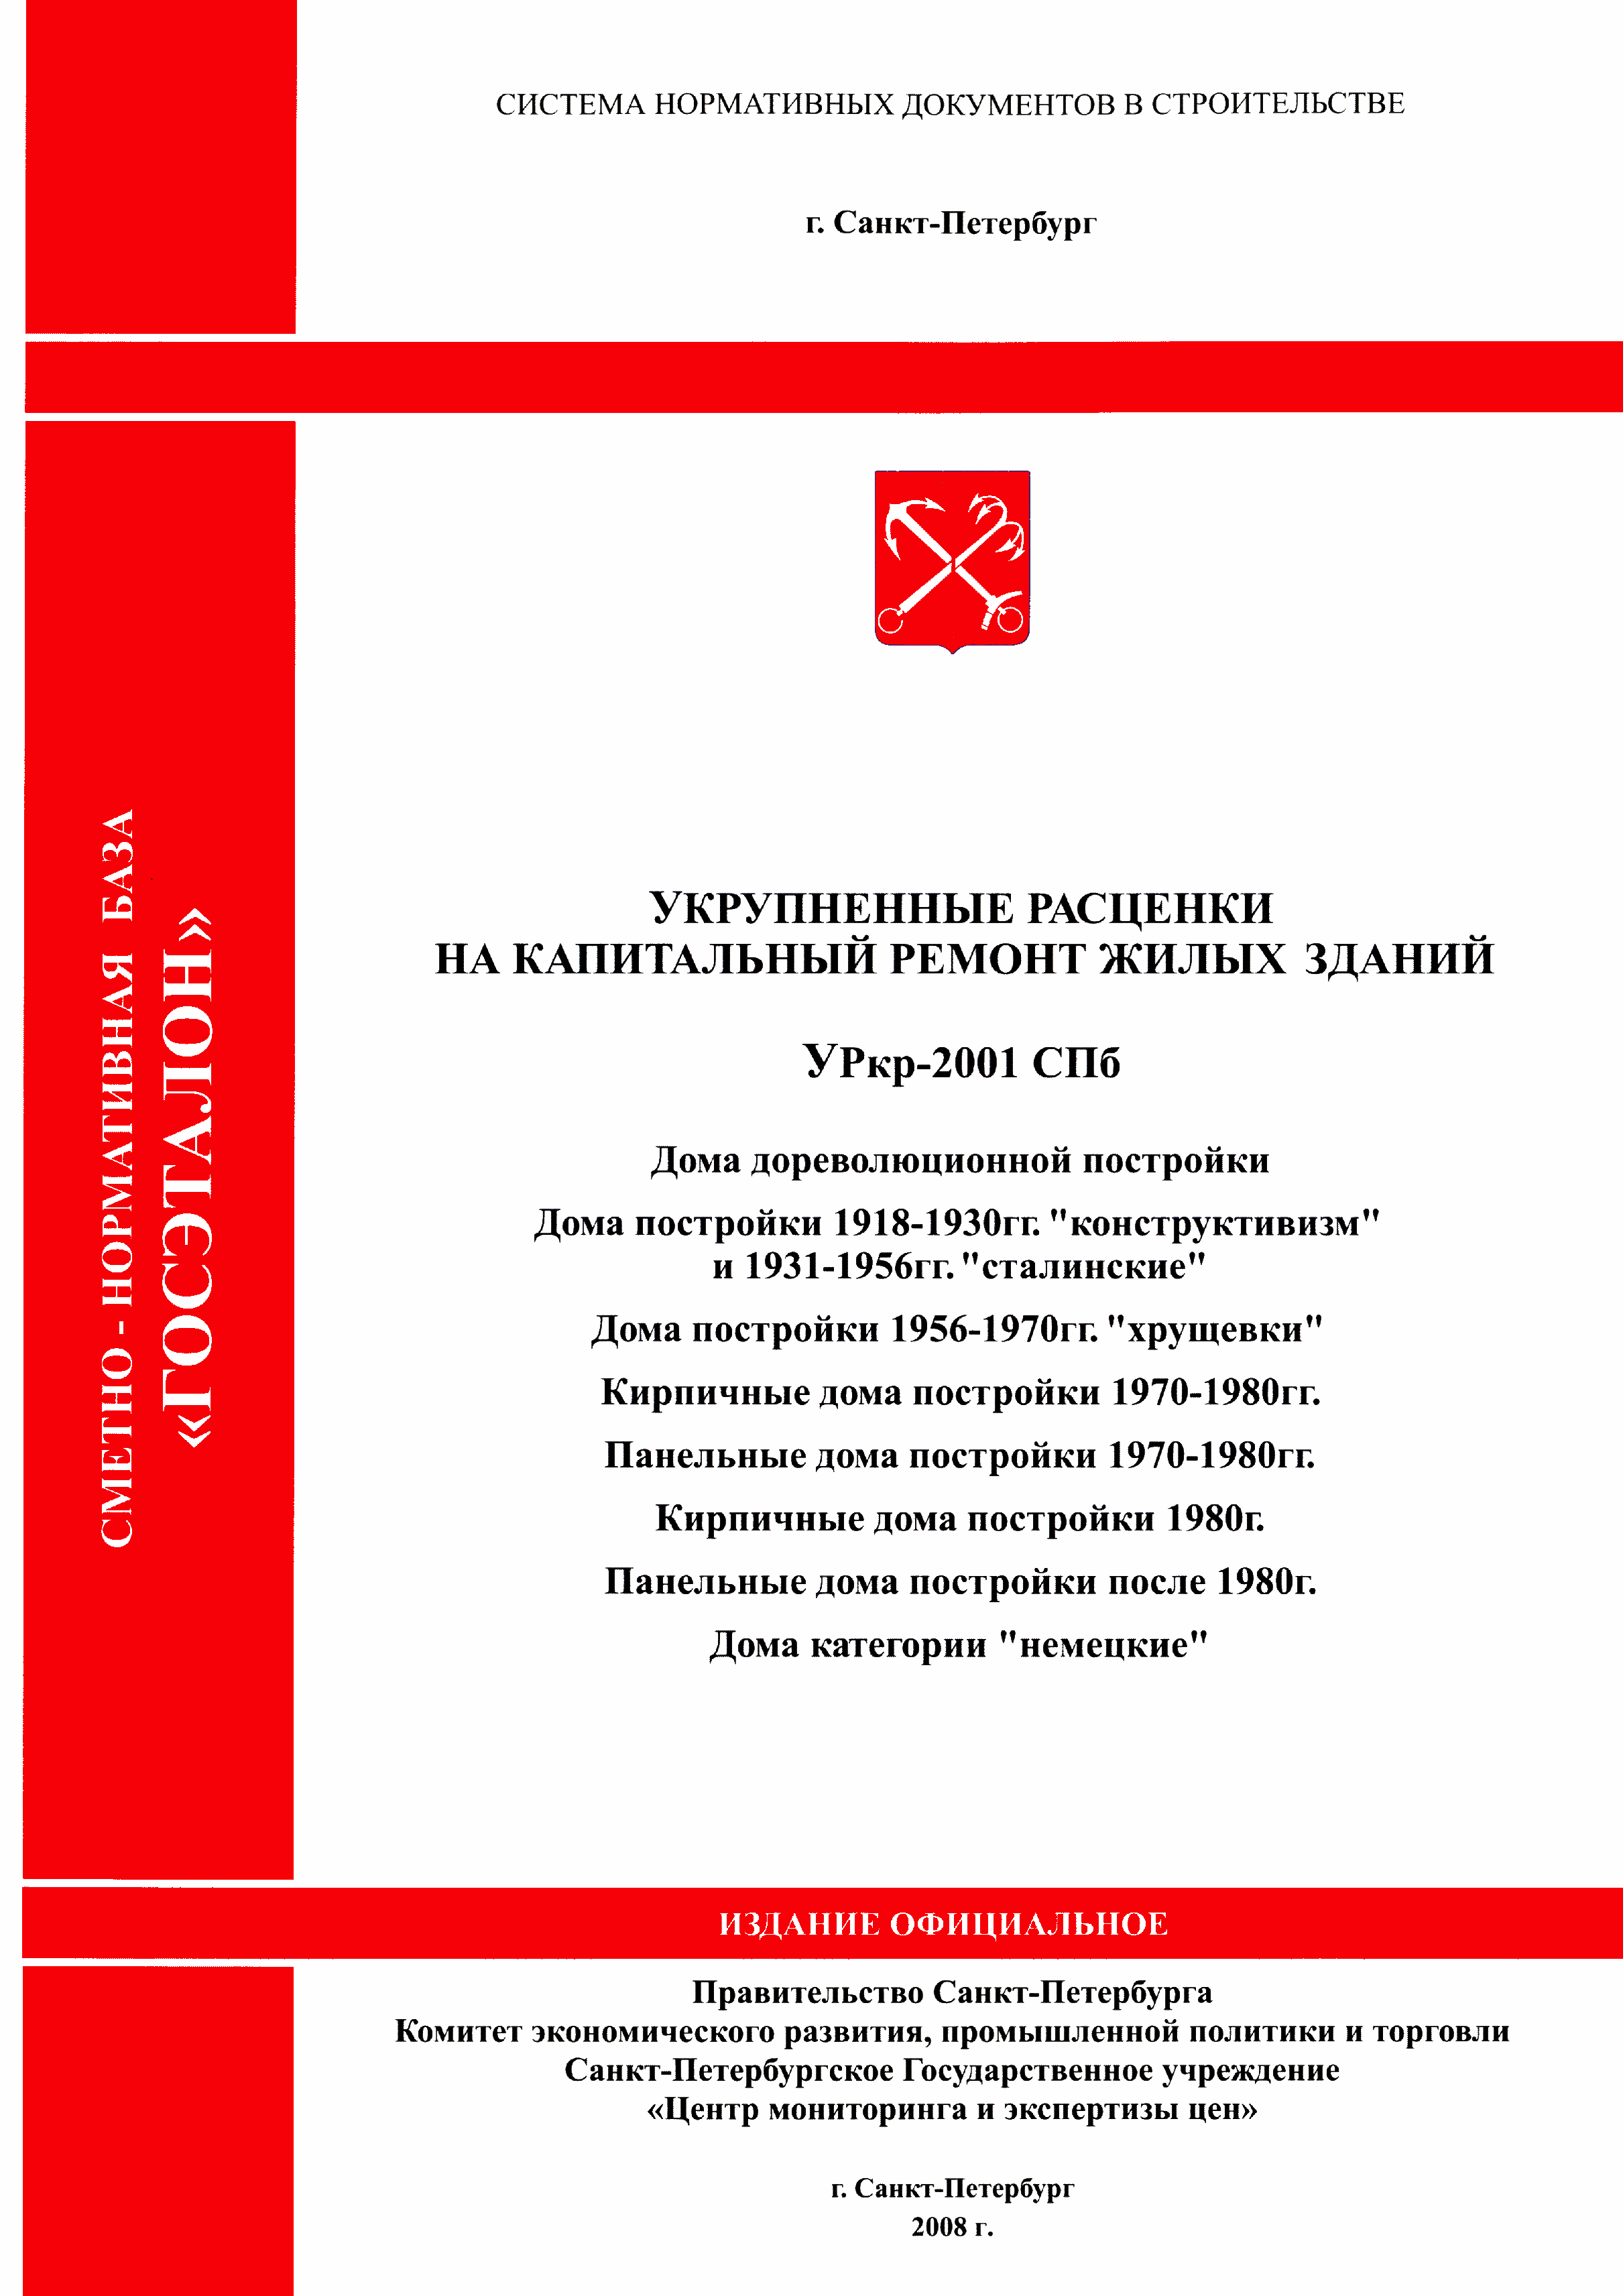 УРкр 07-2001 СПб